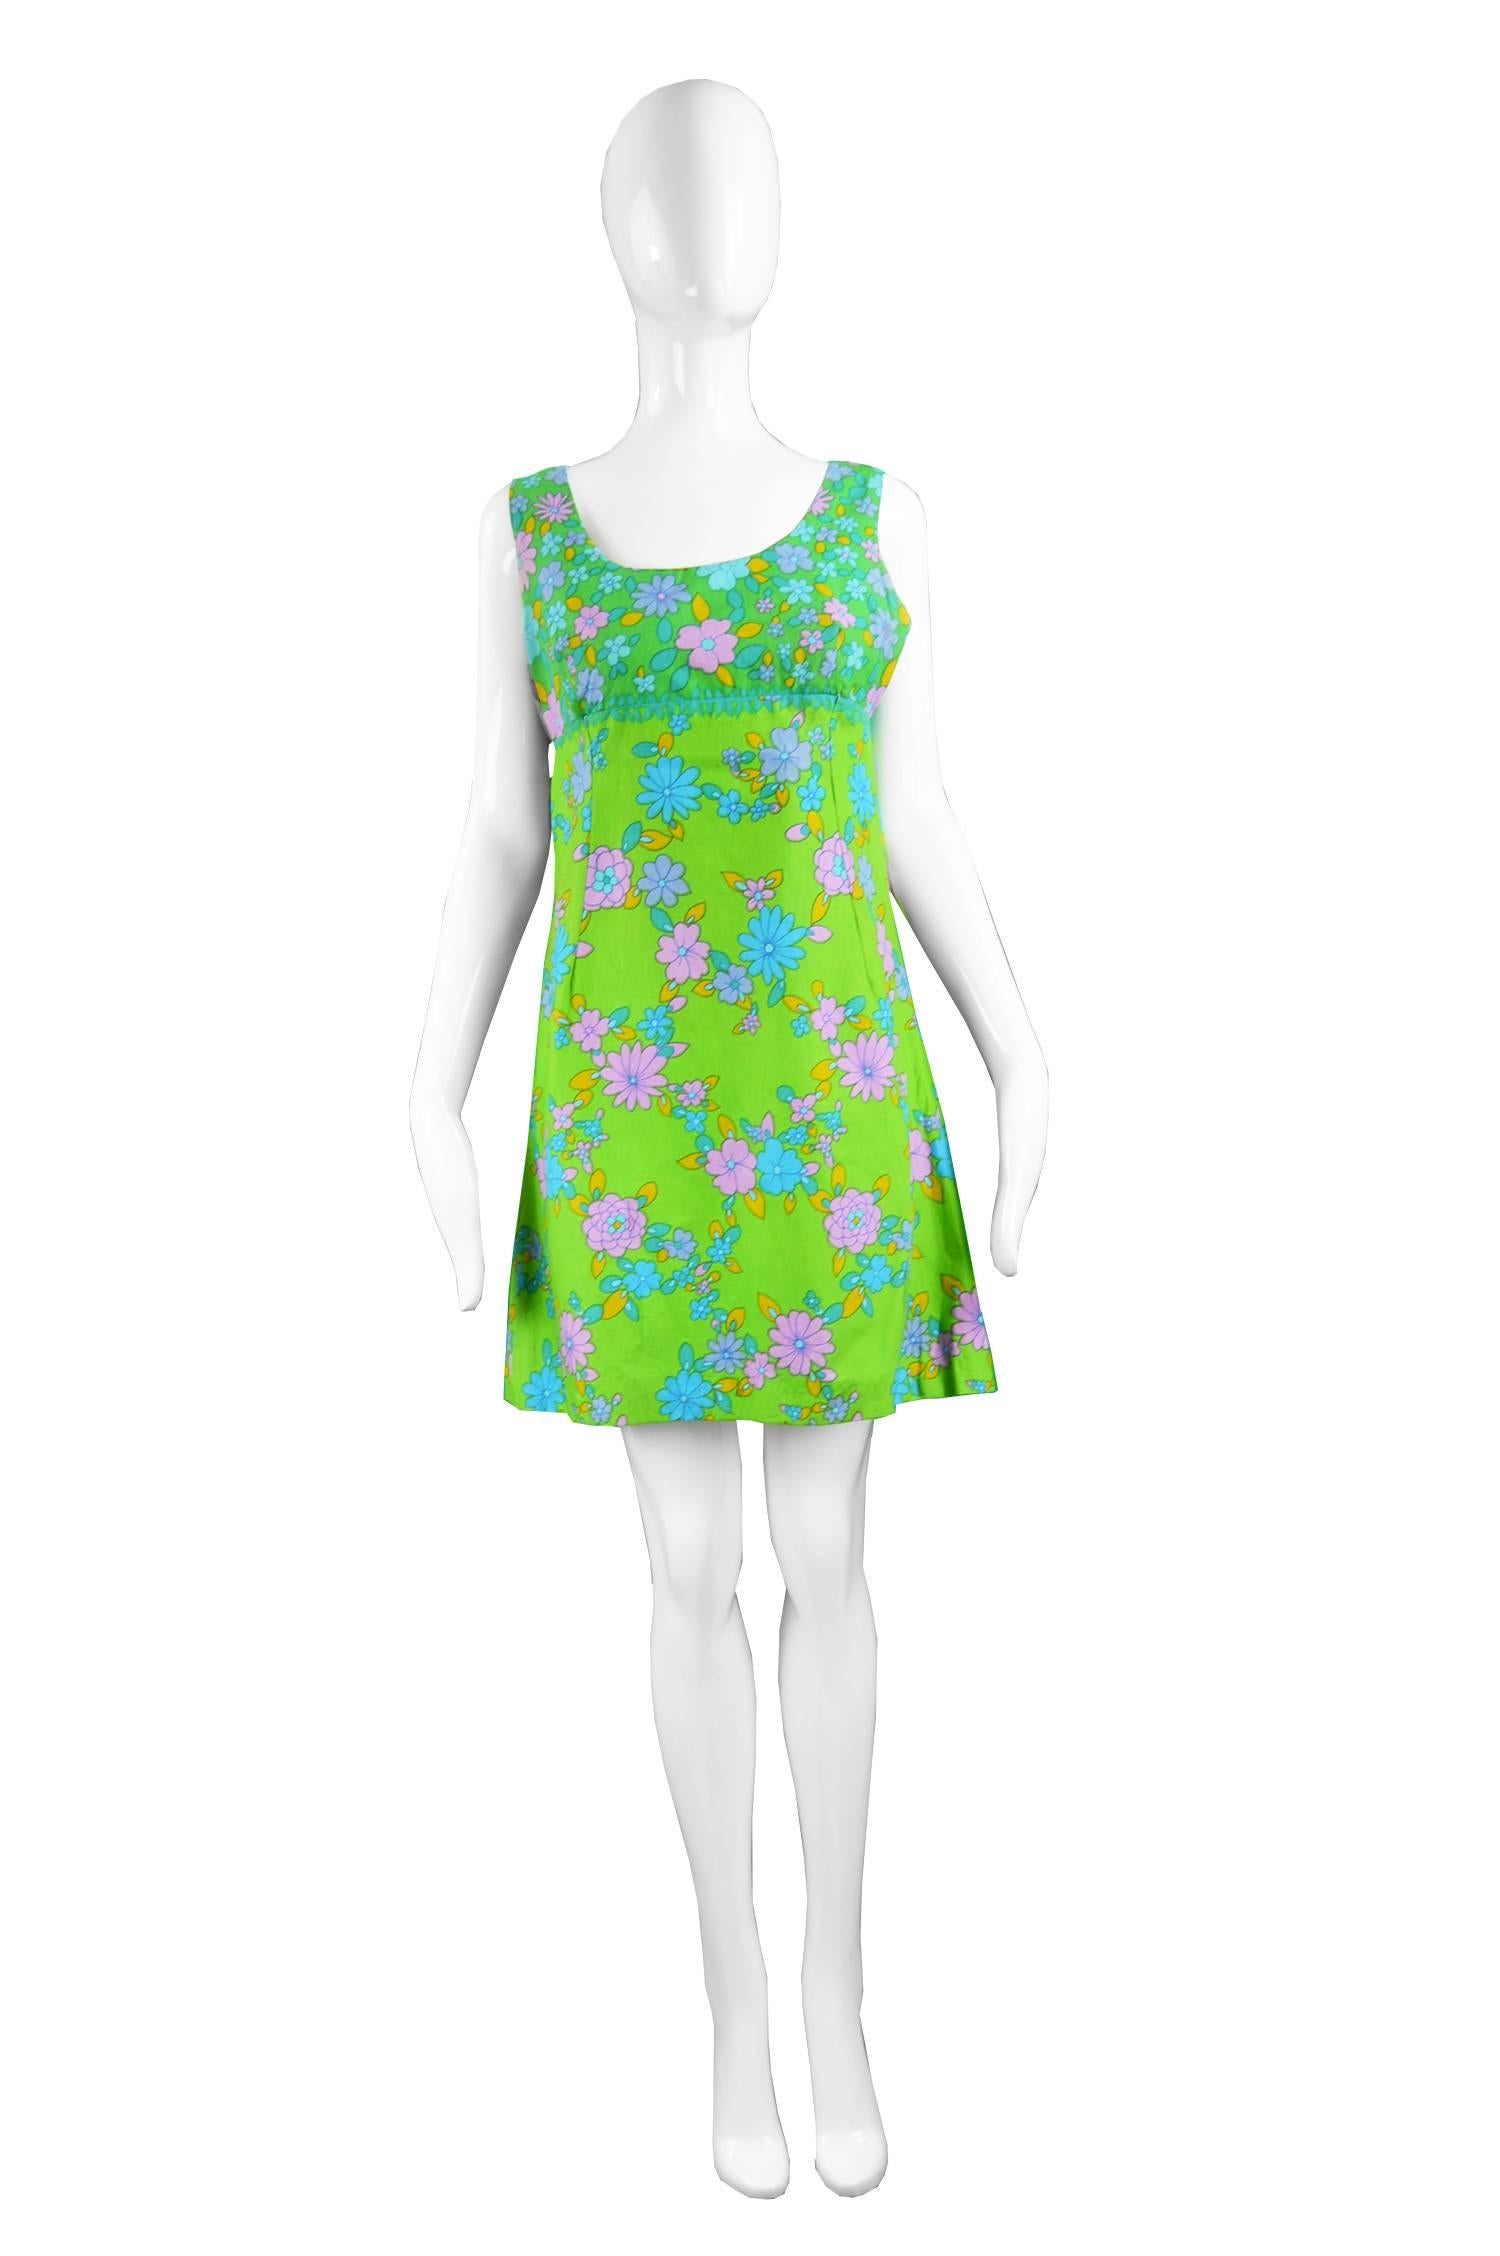 Jeff Banks for Clobber Vintage British Boutique Mini Dress, 1960s

Estimated Size: UK 12/ US 8/ EU 40. Please check measurements. 
Bust - 36” / 91cm
Waist - 32” / 81cm
Hips - 38” / 96cm
Length (Shoulder to Hem) - 33” / 84cm

Condition: Very Good